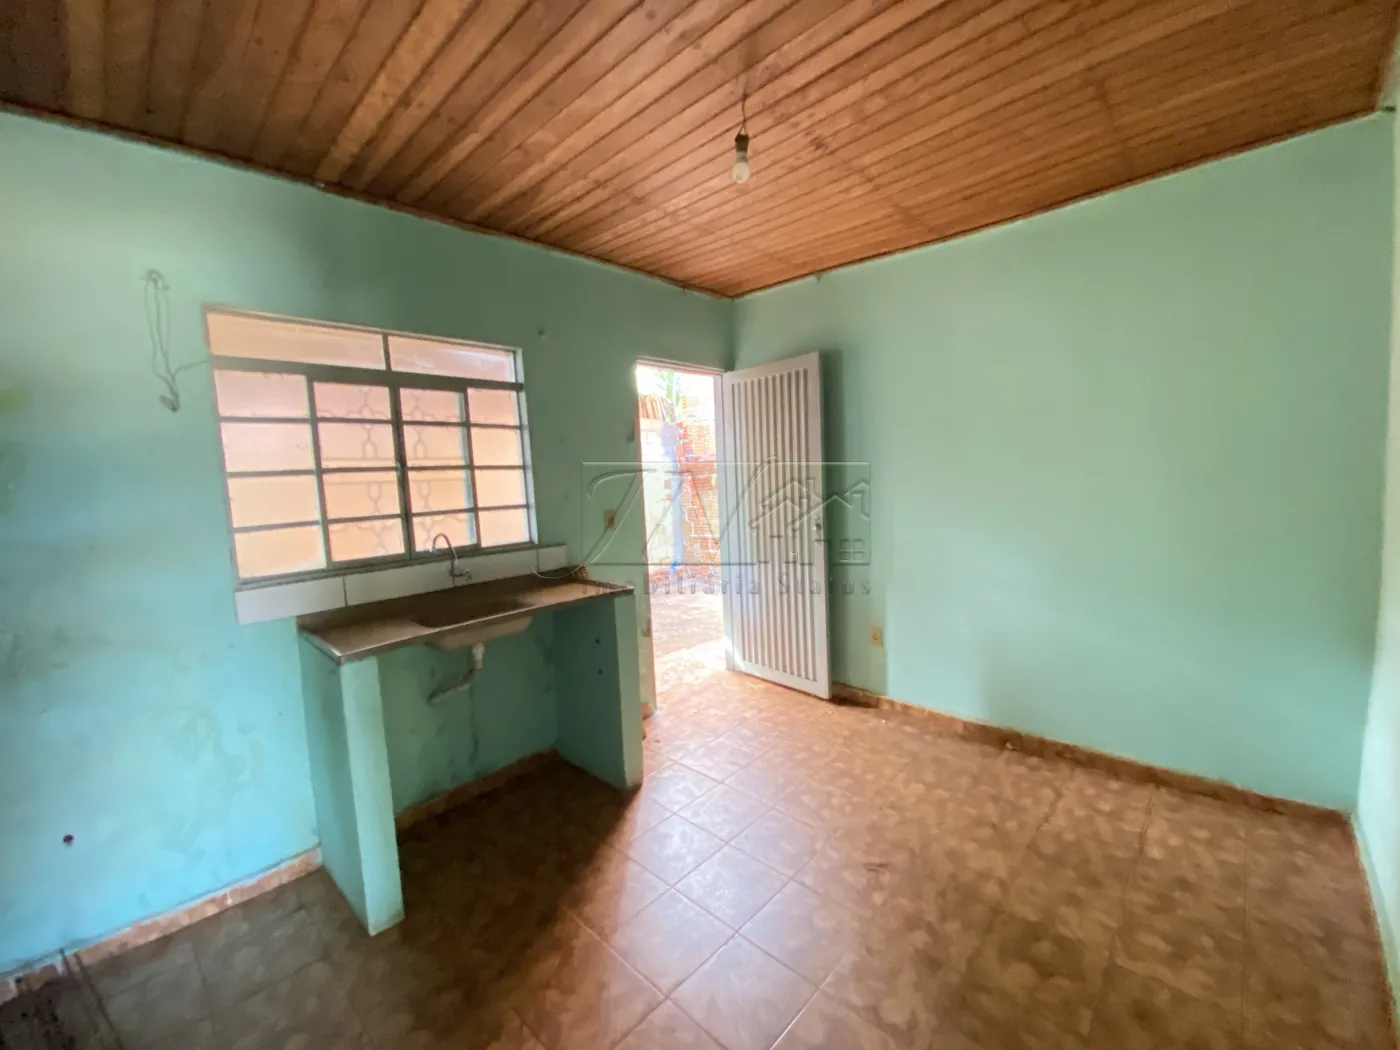 Alugar Residenciais / Casas em Santa Cruz do Rio Pardo R$ 700,00 - Foto 6